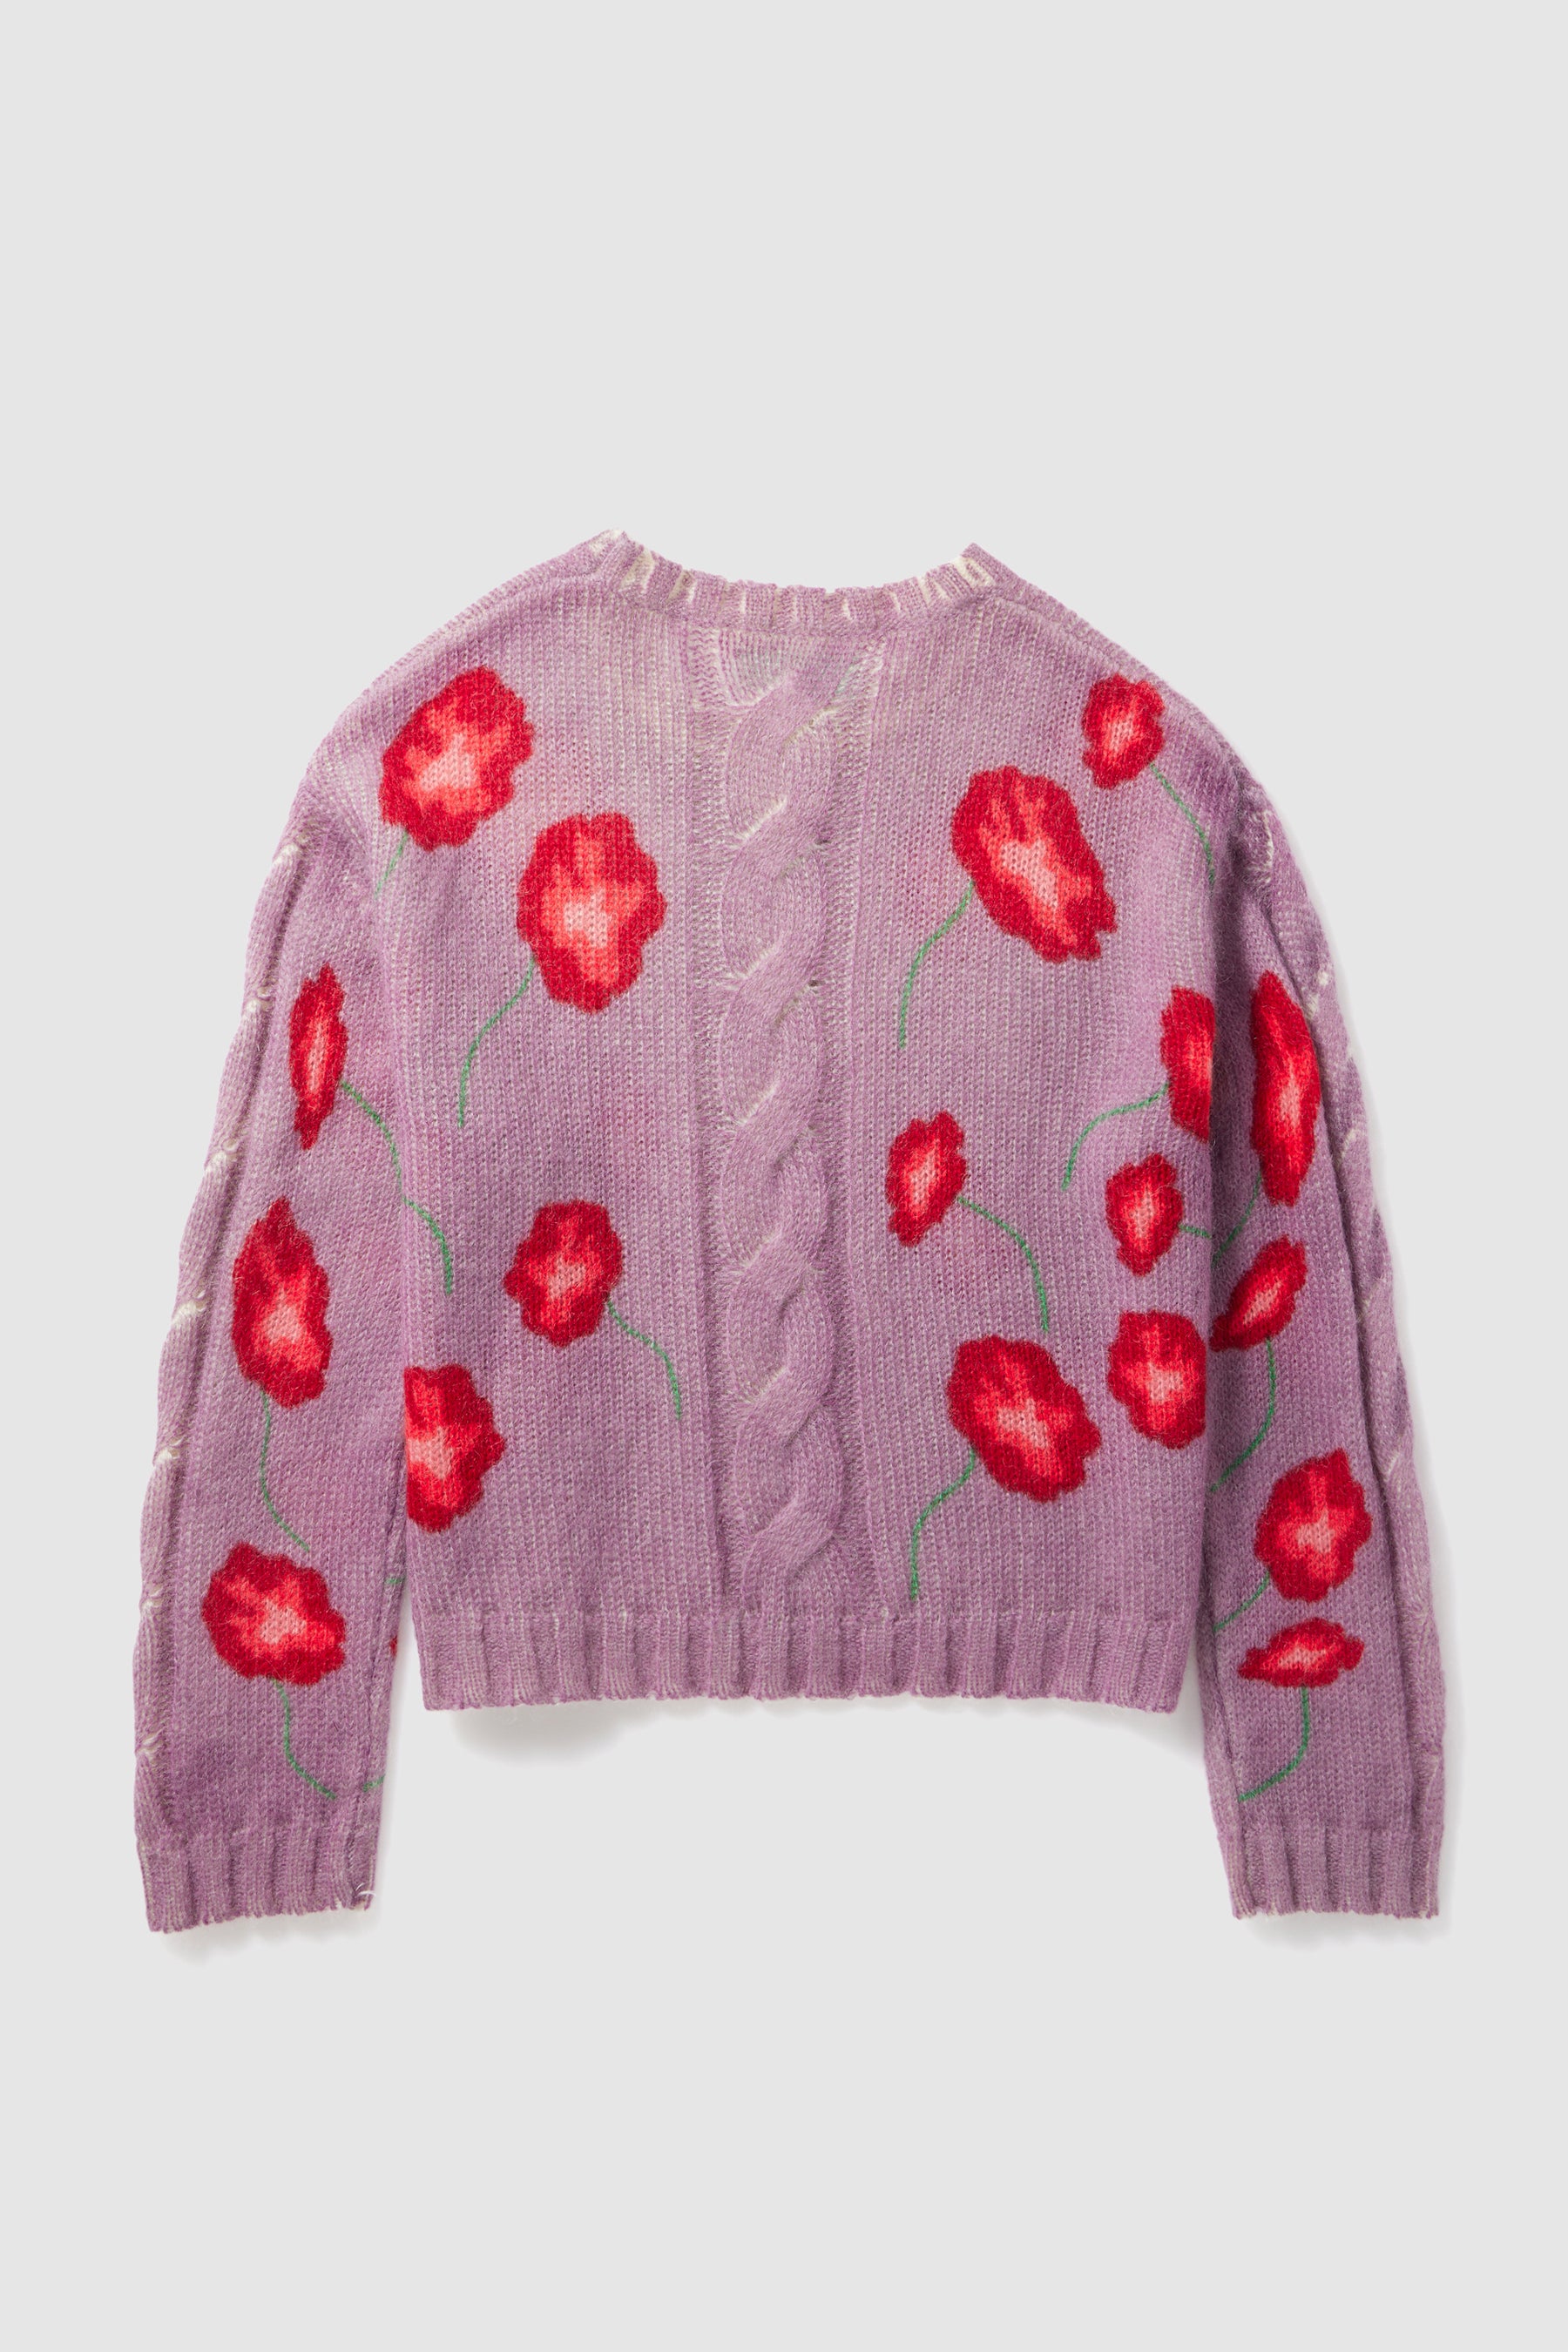 Ellis sweater in lilac Poppy knit